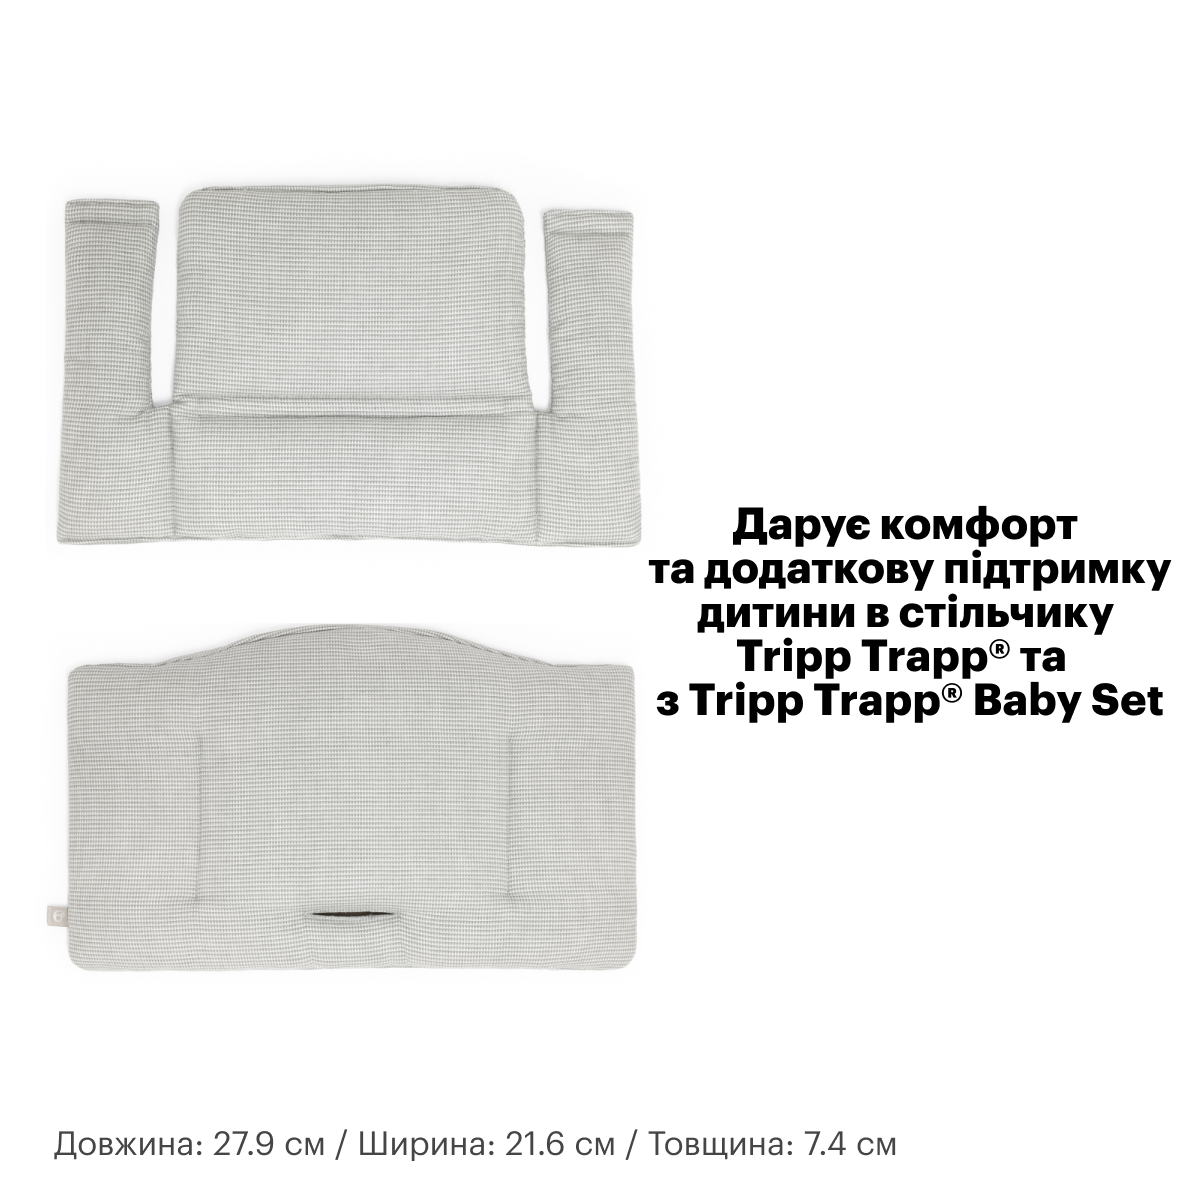 Текстиль для стульчика Stokke Tripp Trapp Stars multi (100372) - фото 4